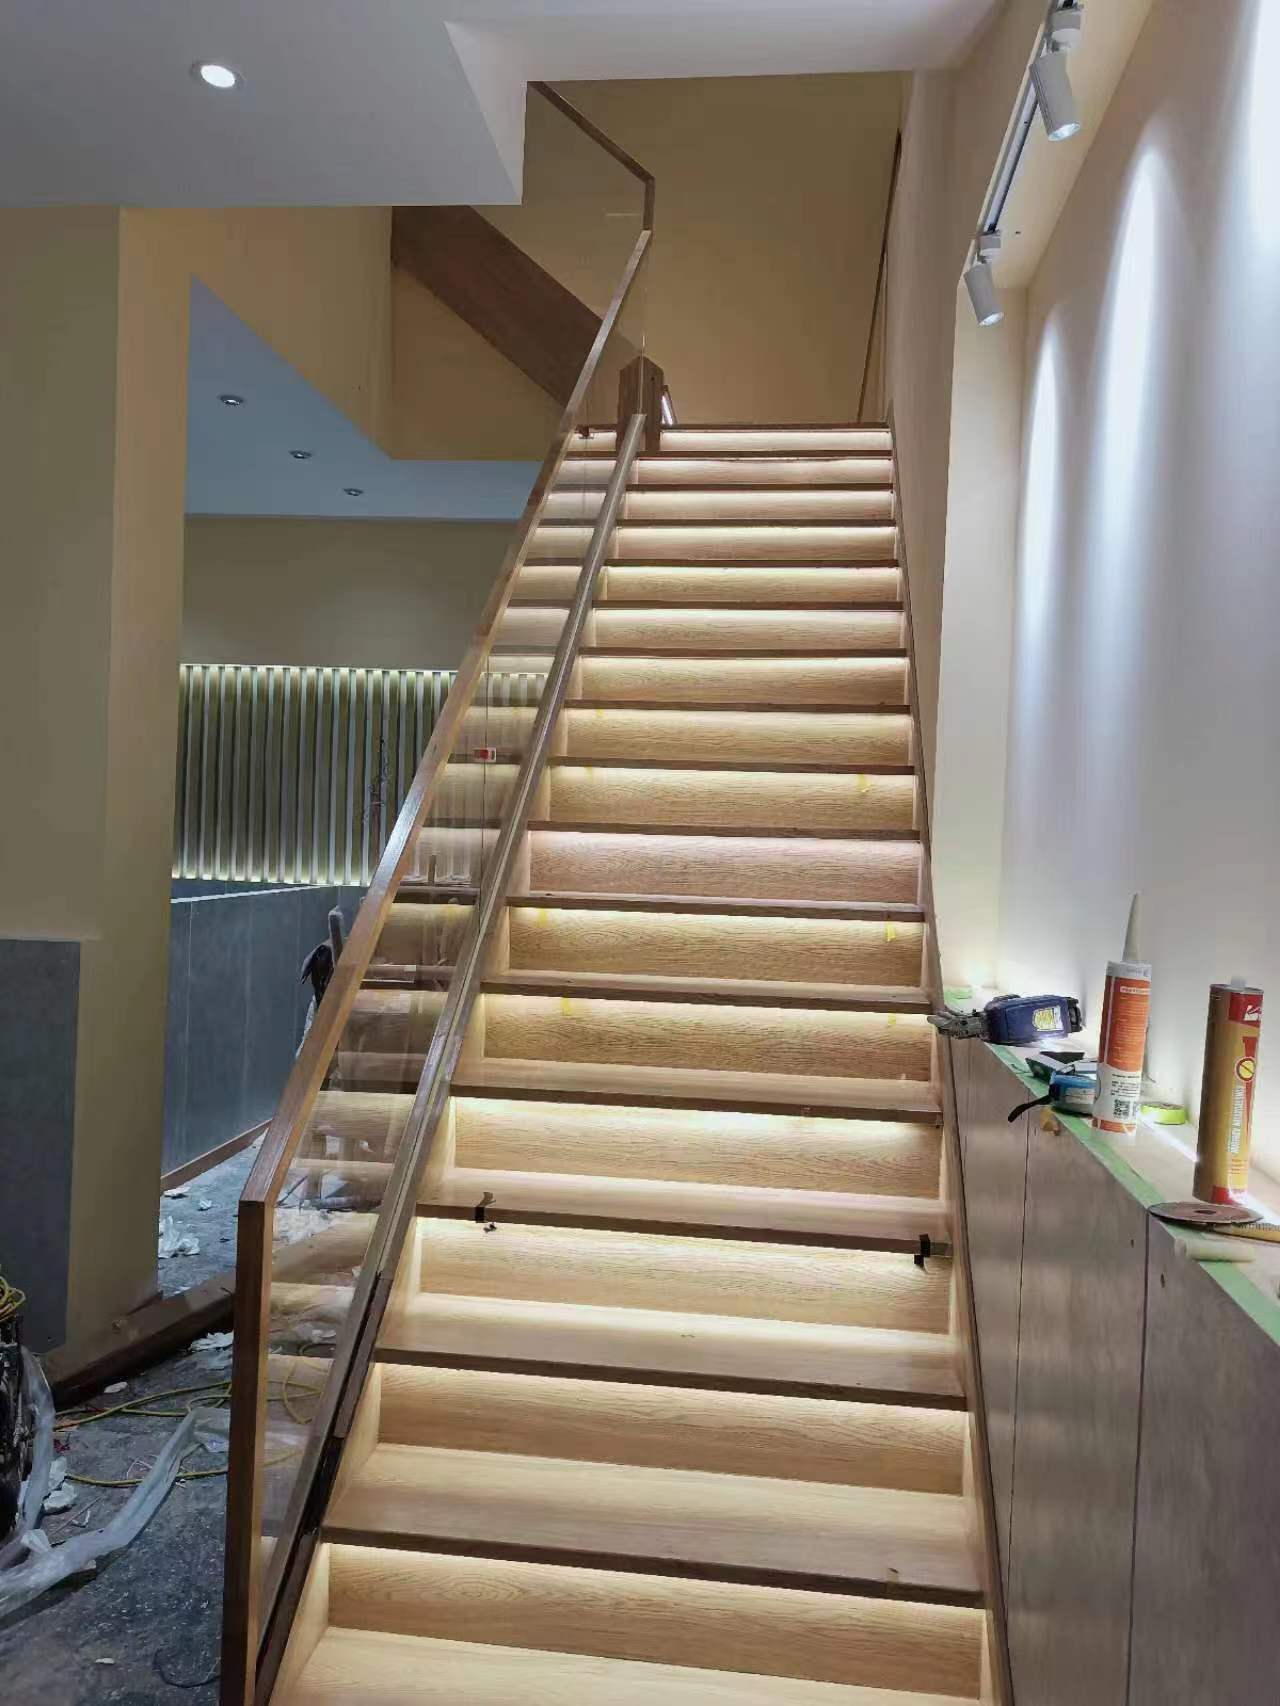 樓梯踏步地板定制實鋪效果